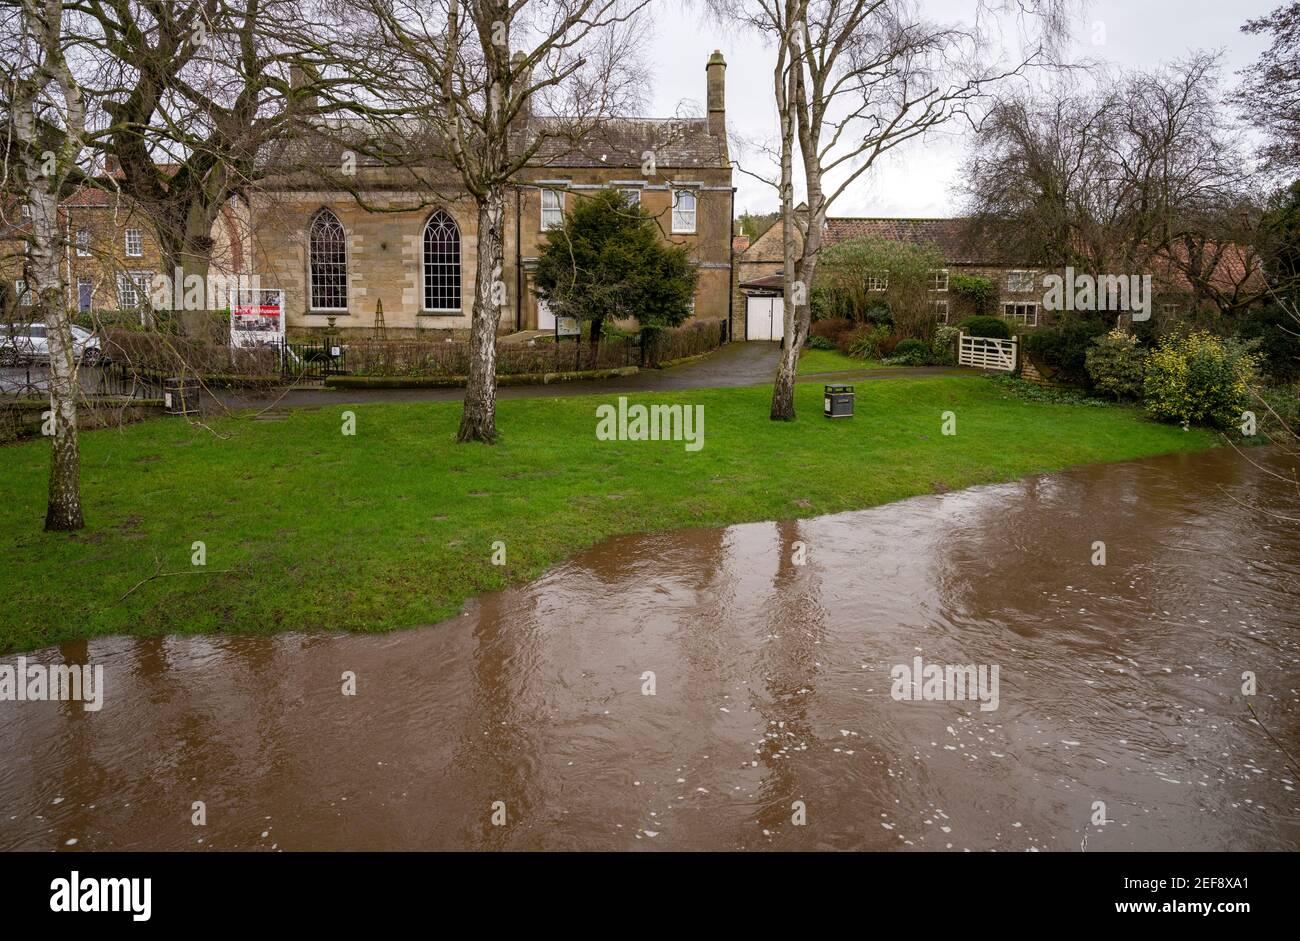 La ville de Pickering est située au bord des inondations pendant la tempête Dennis Banque D'Images